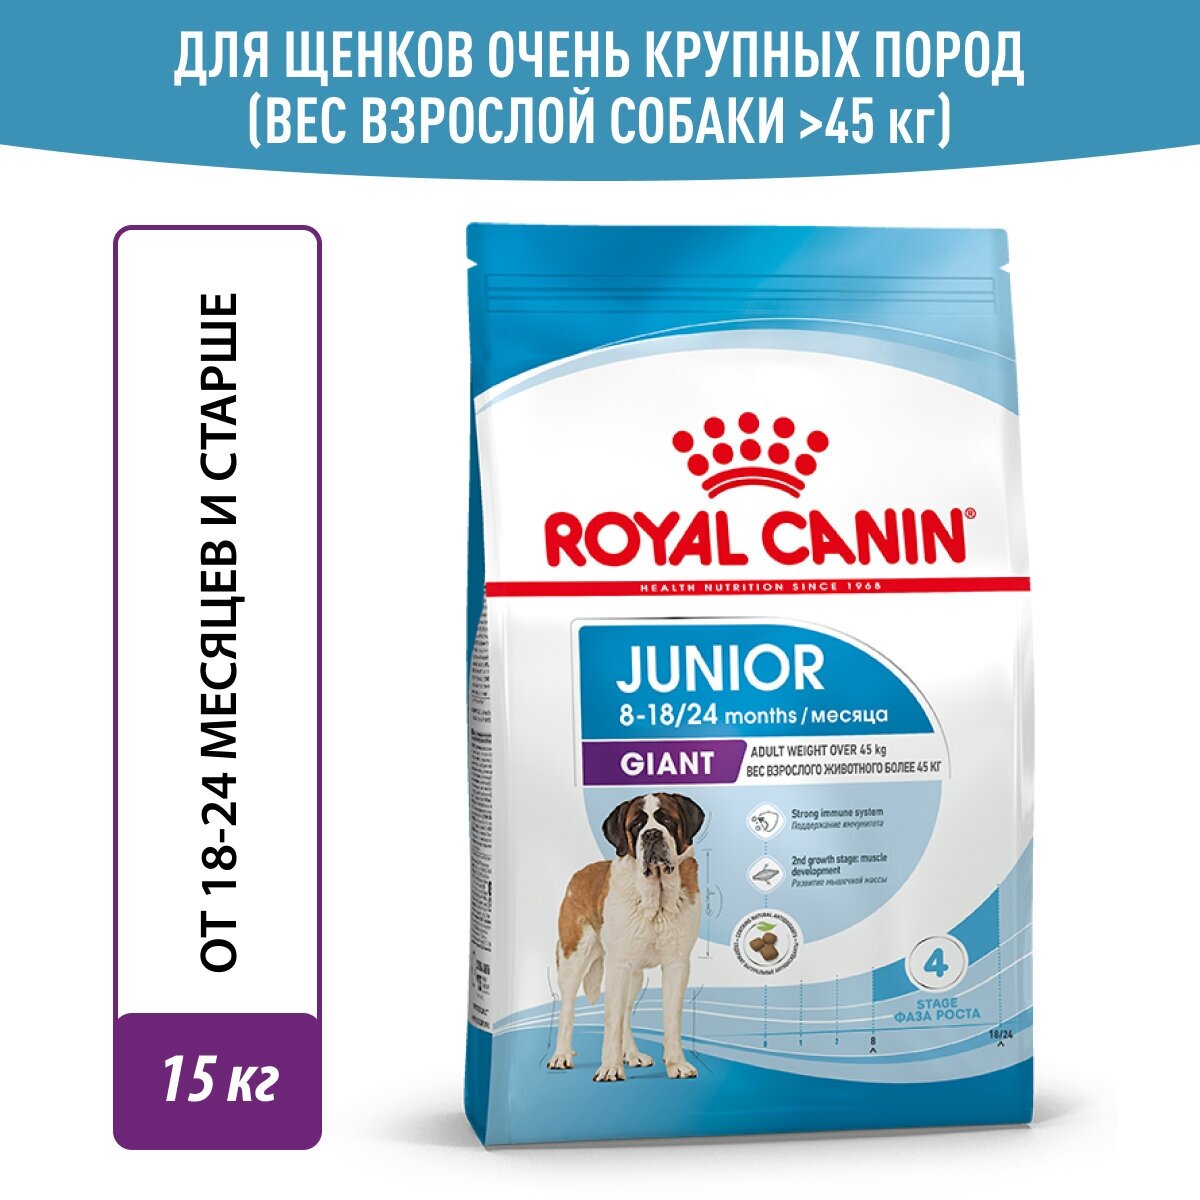 Royal Canin Junior Giant для щенков (в возрасте от 8 до 18/24 месяцев) 15 кг